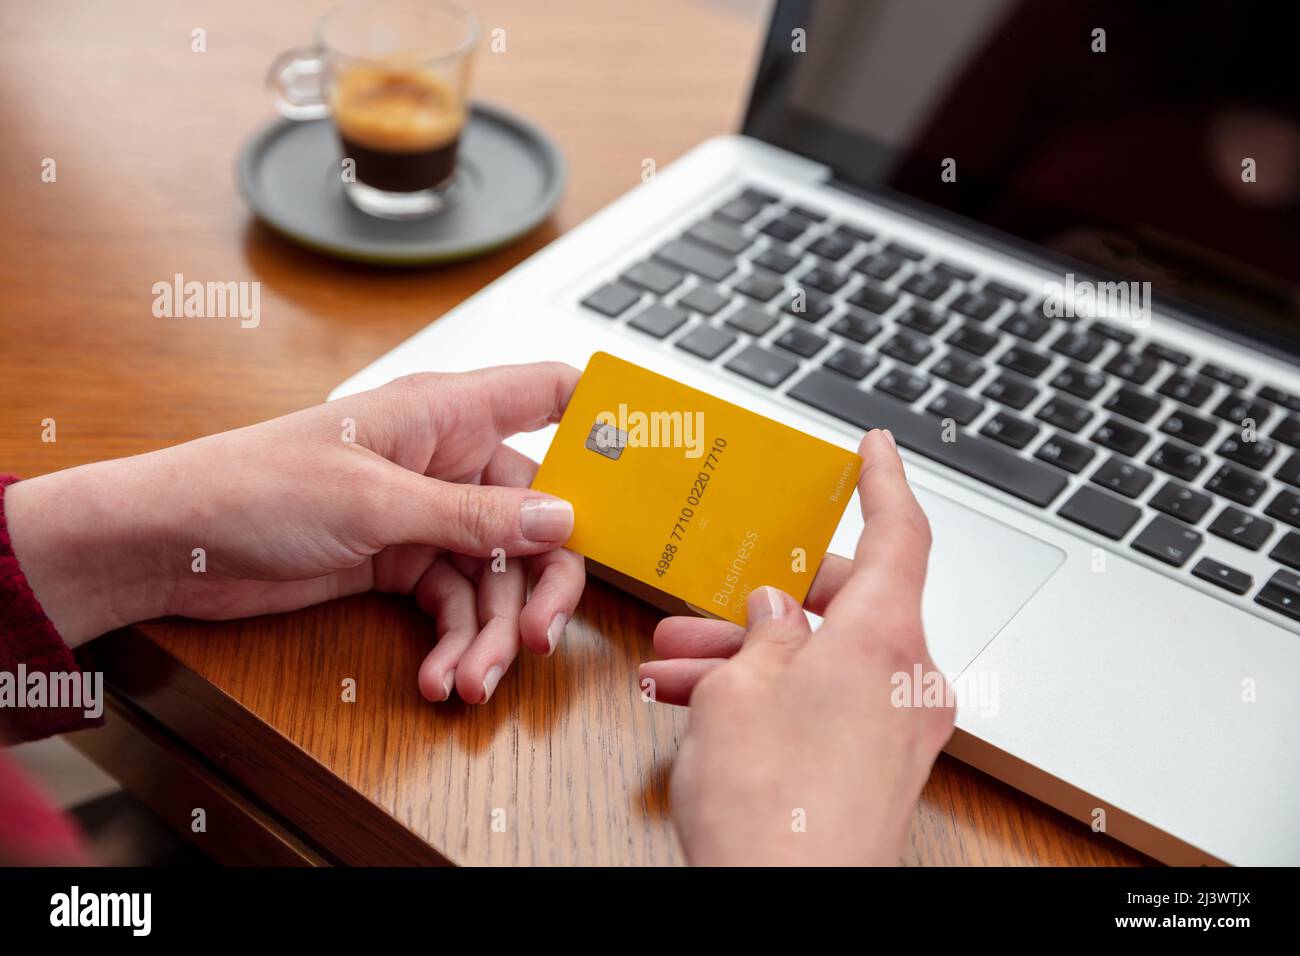 Bankkreditkarte, weibliche Hände halten leere gelbe Plastikkarte, Online-Zahlung und Einkaufen mit Computer-Laptop, Nahaufnahme Stockfoto